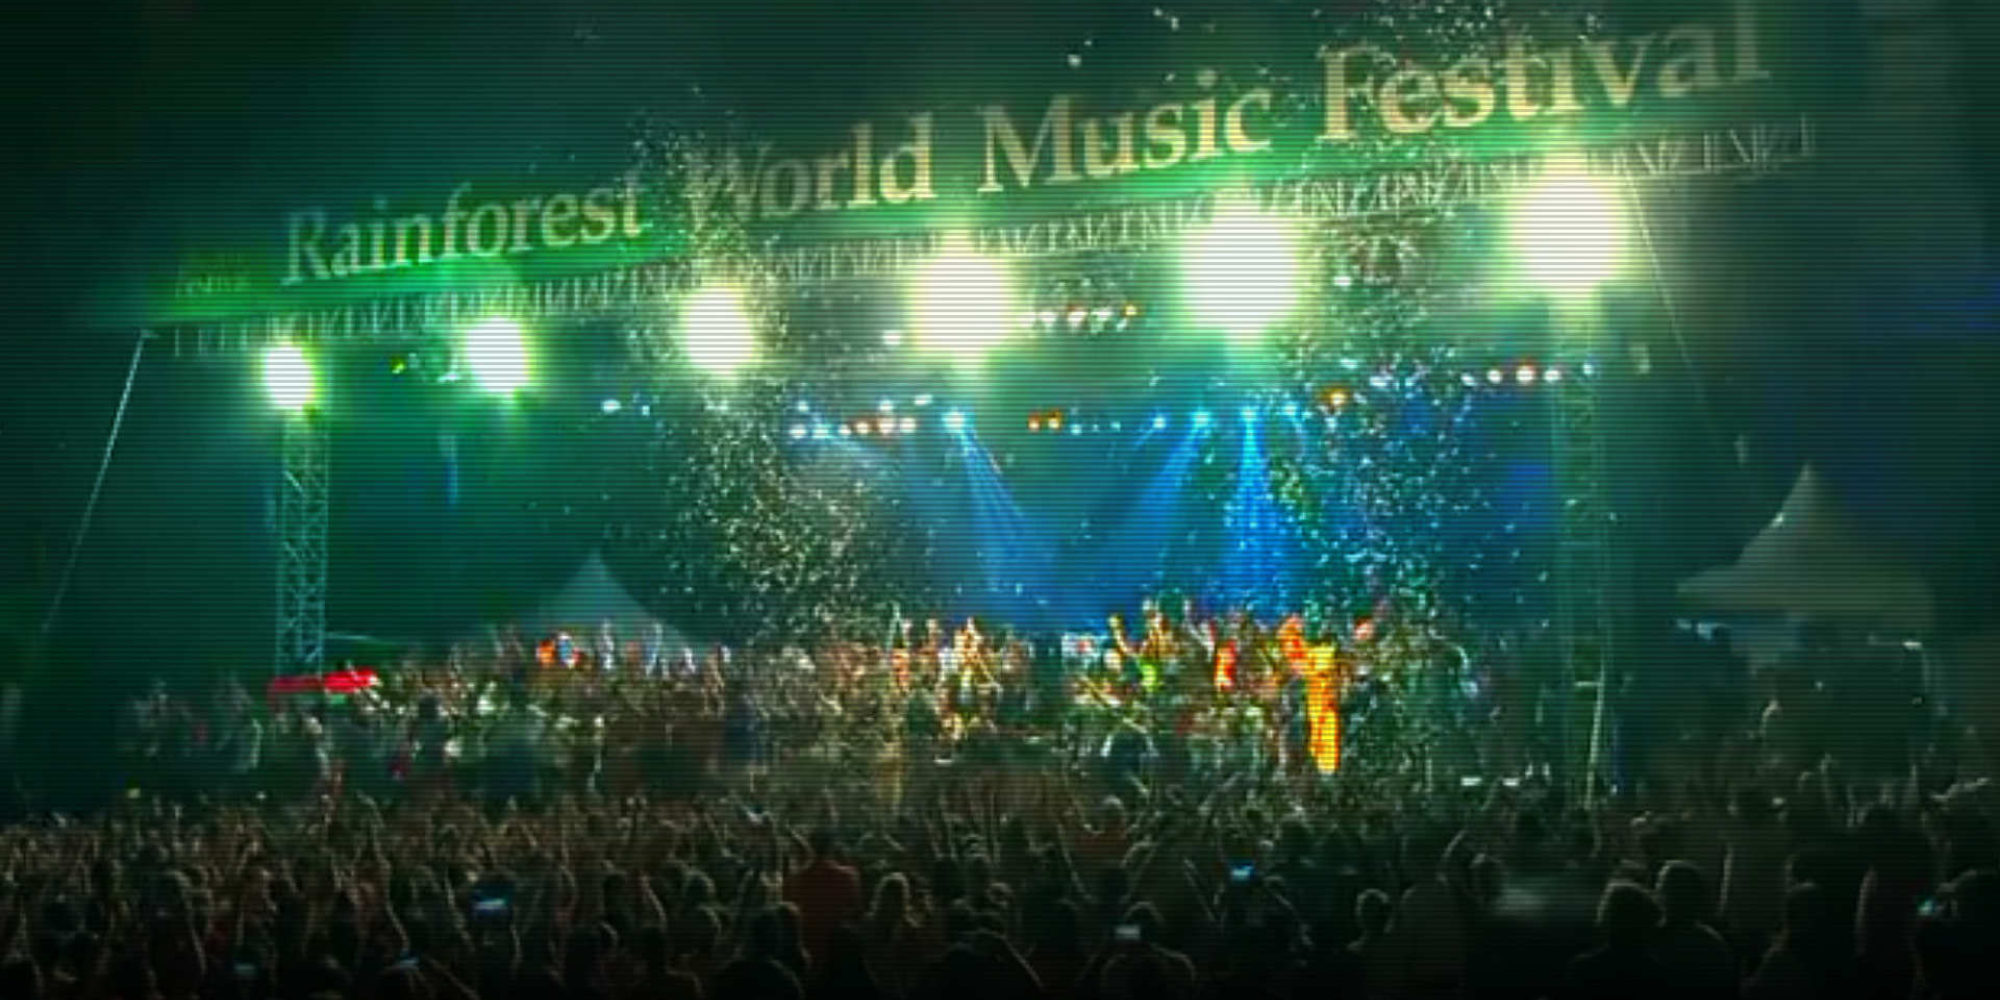 Rainforest world music festival